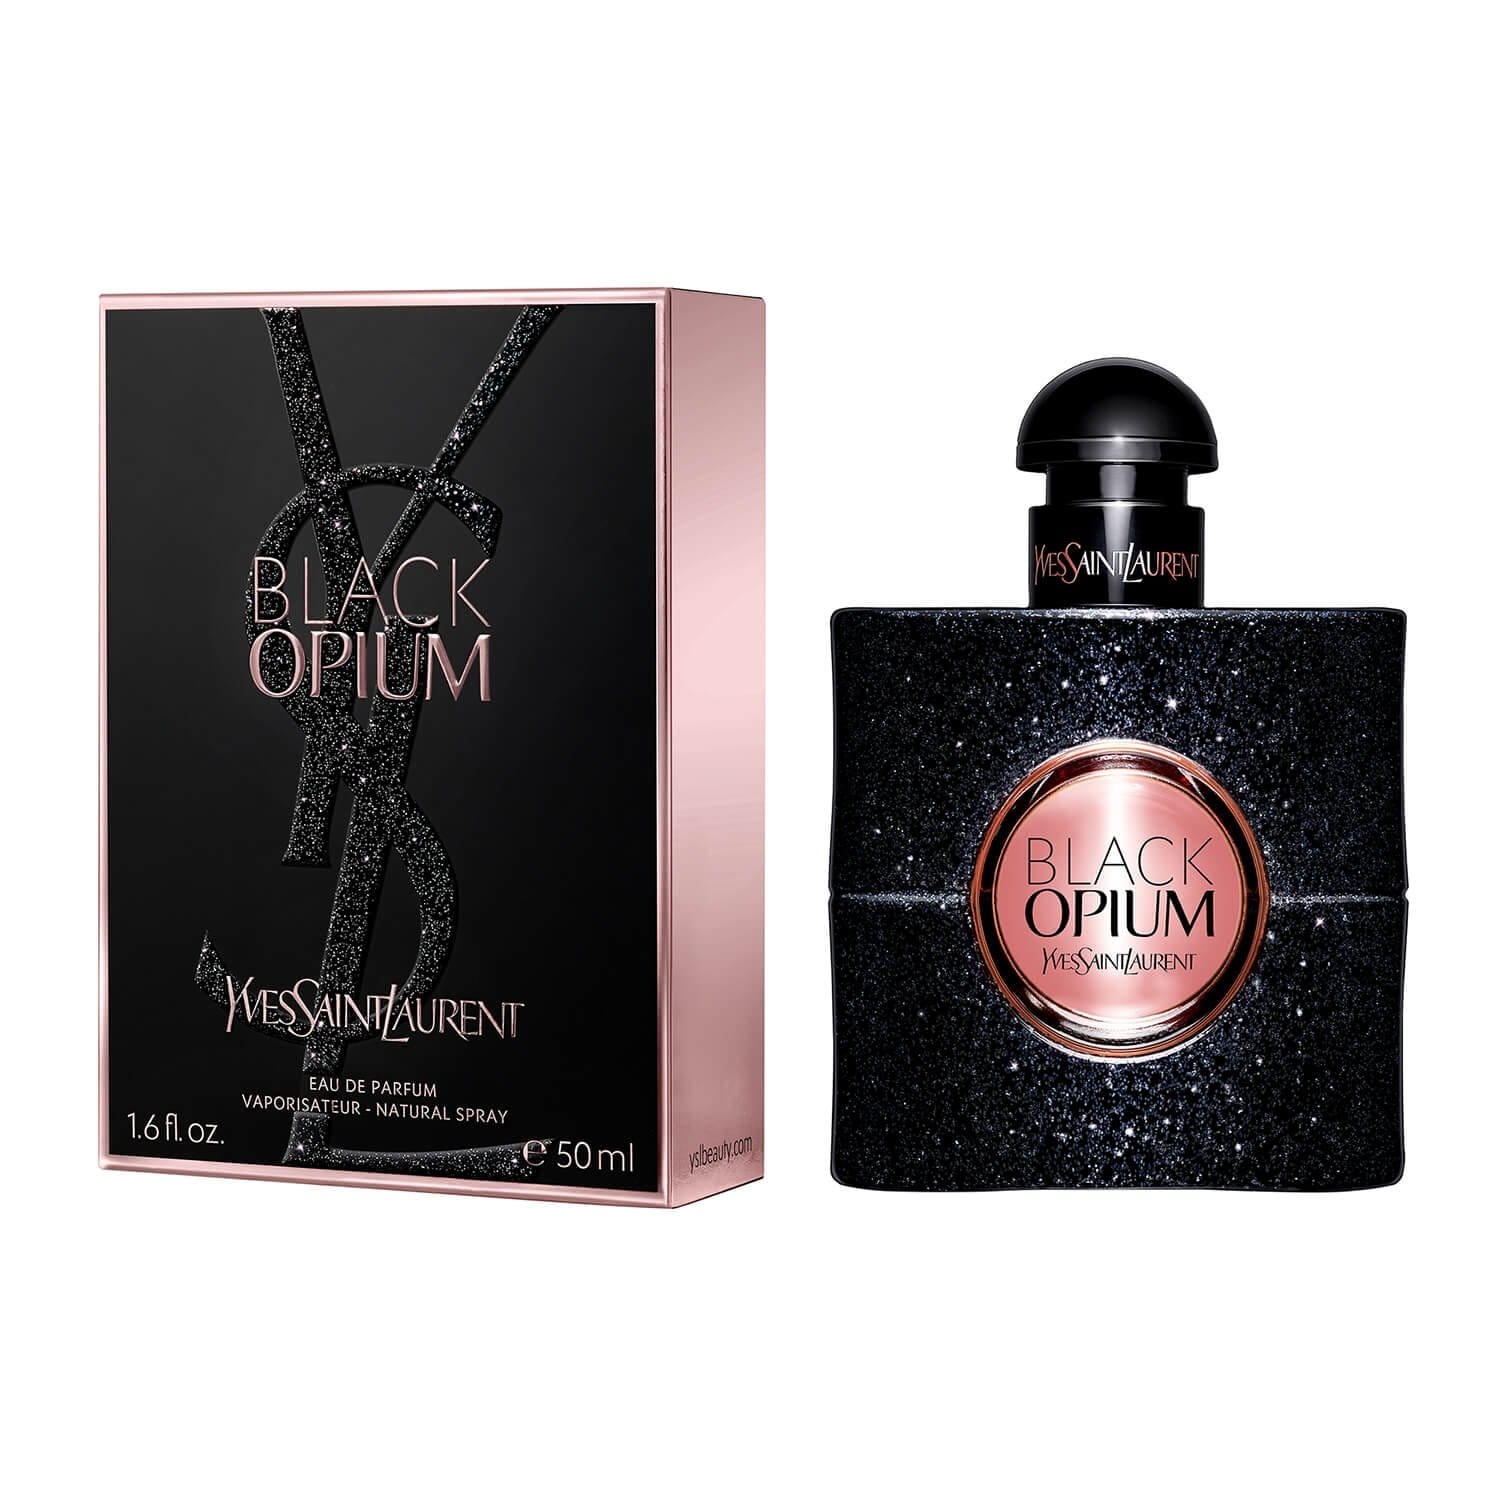 Yves Saint Laurent Black Opium Eau de Parfum, 50ml